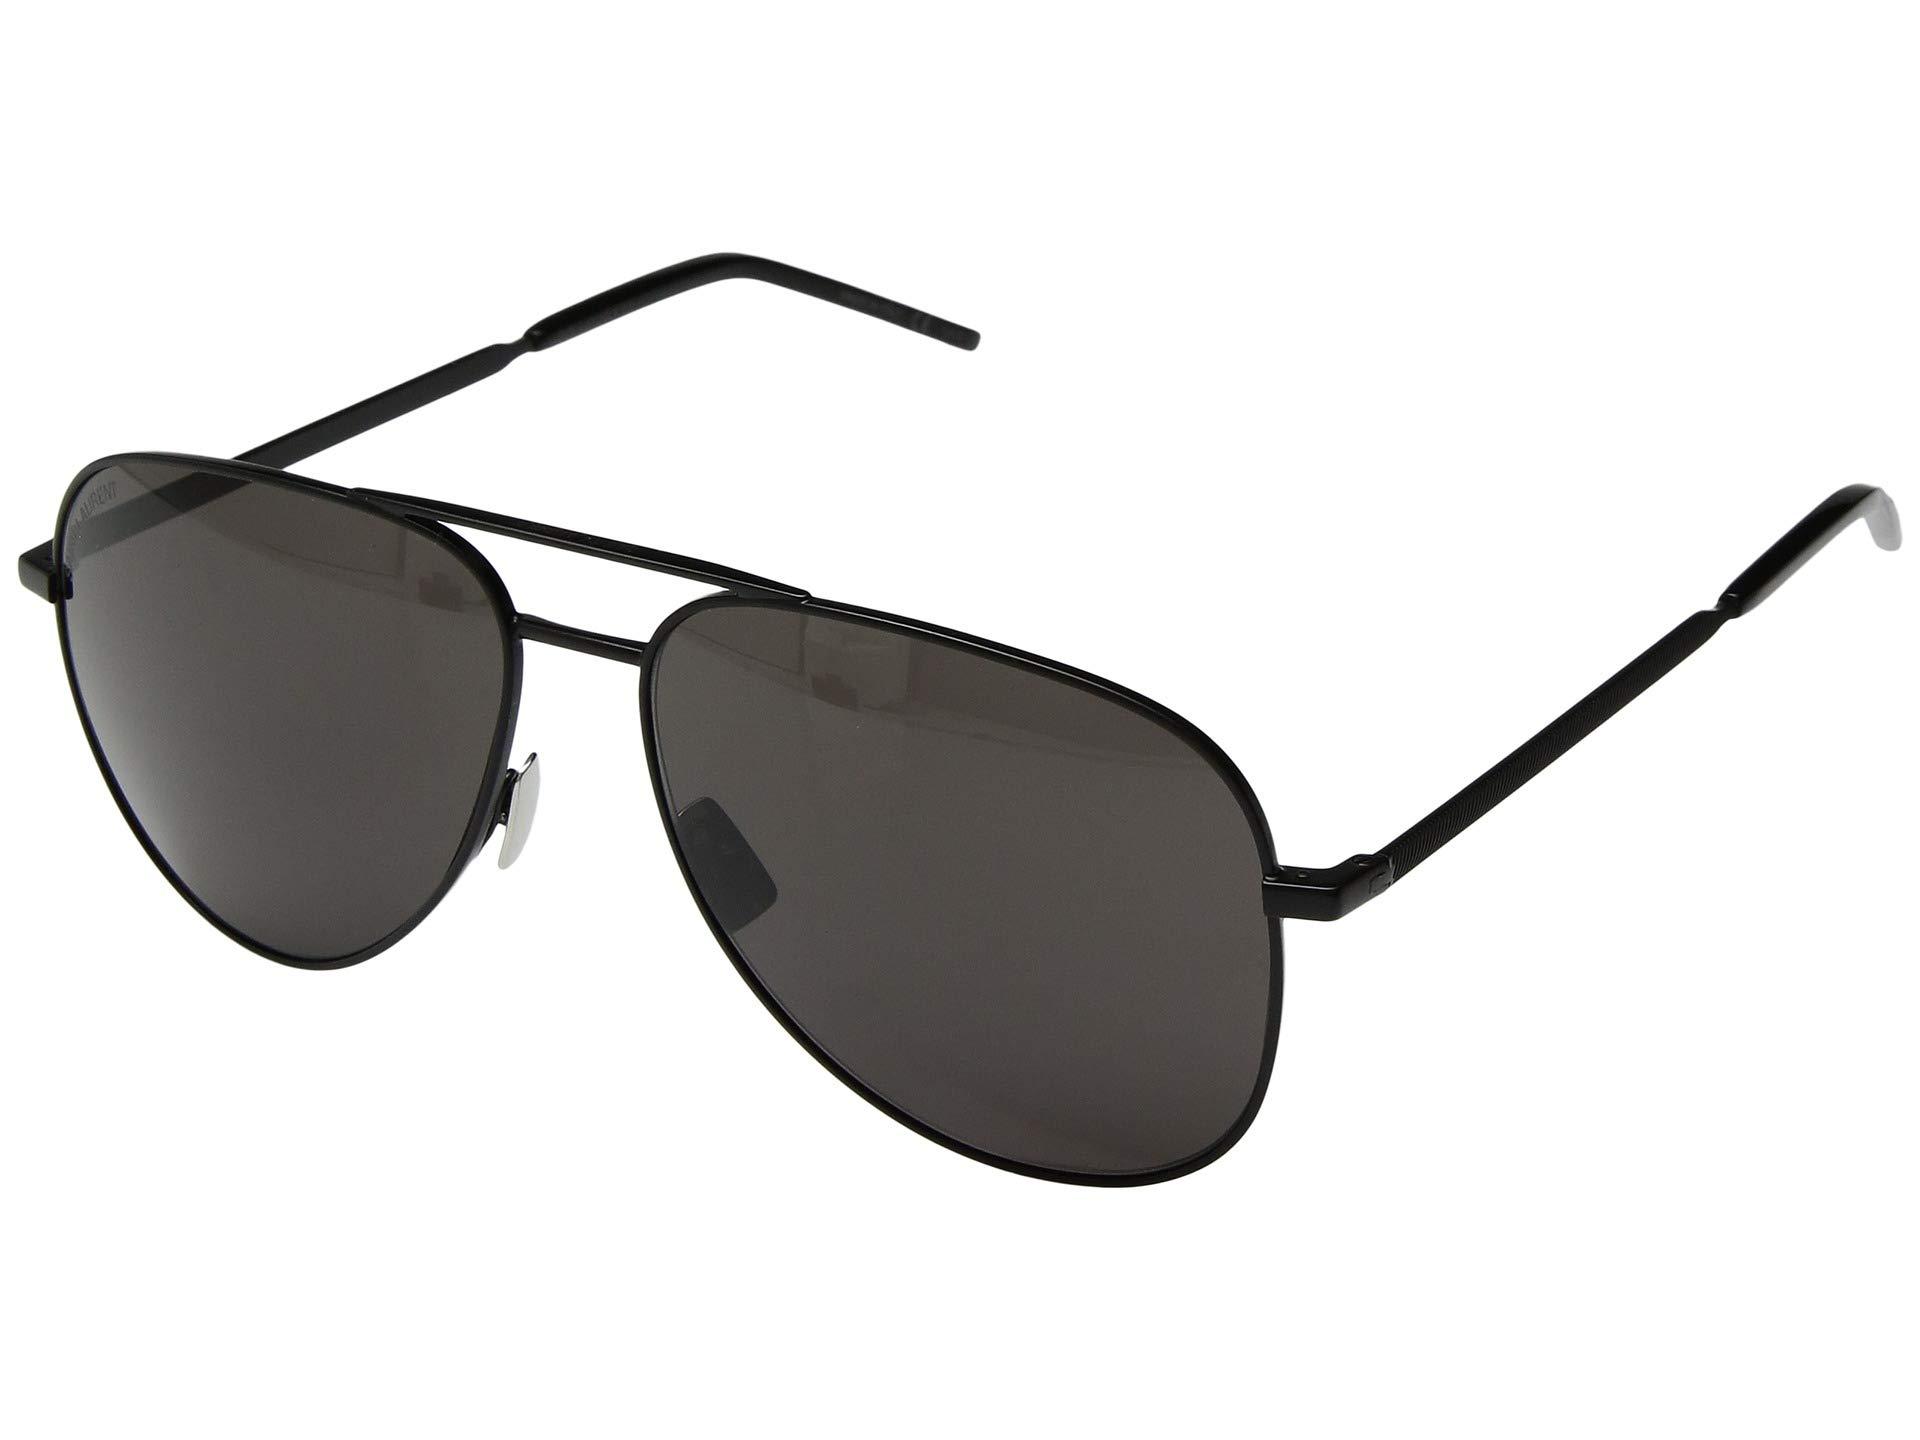 Saint Laurent Classic 11 Aviator Sunglasses in Black - Lyst